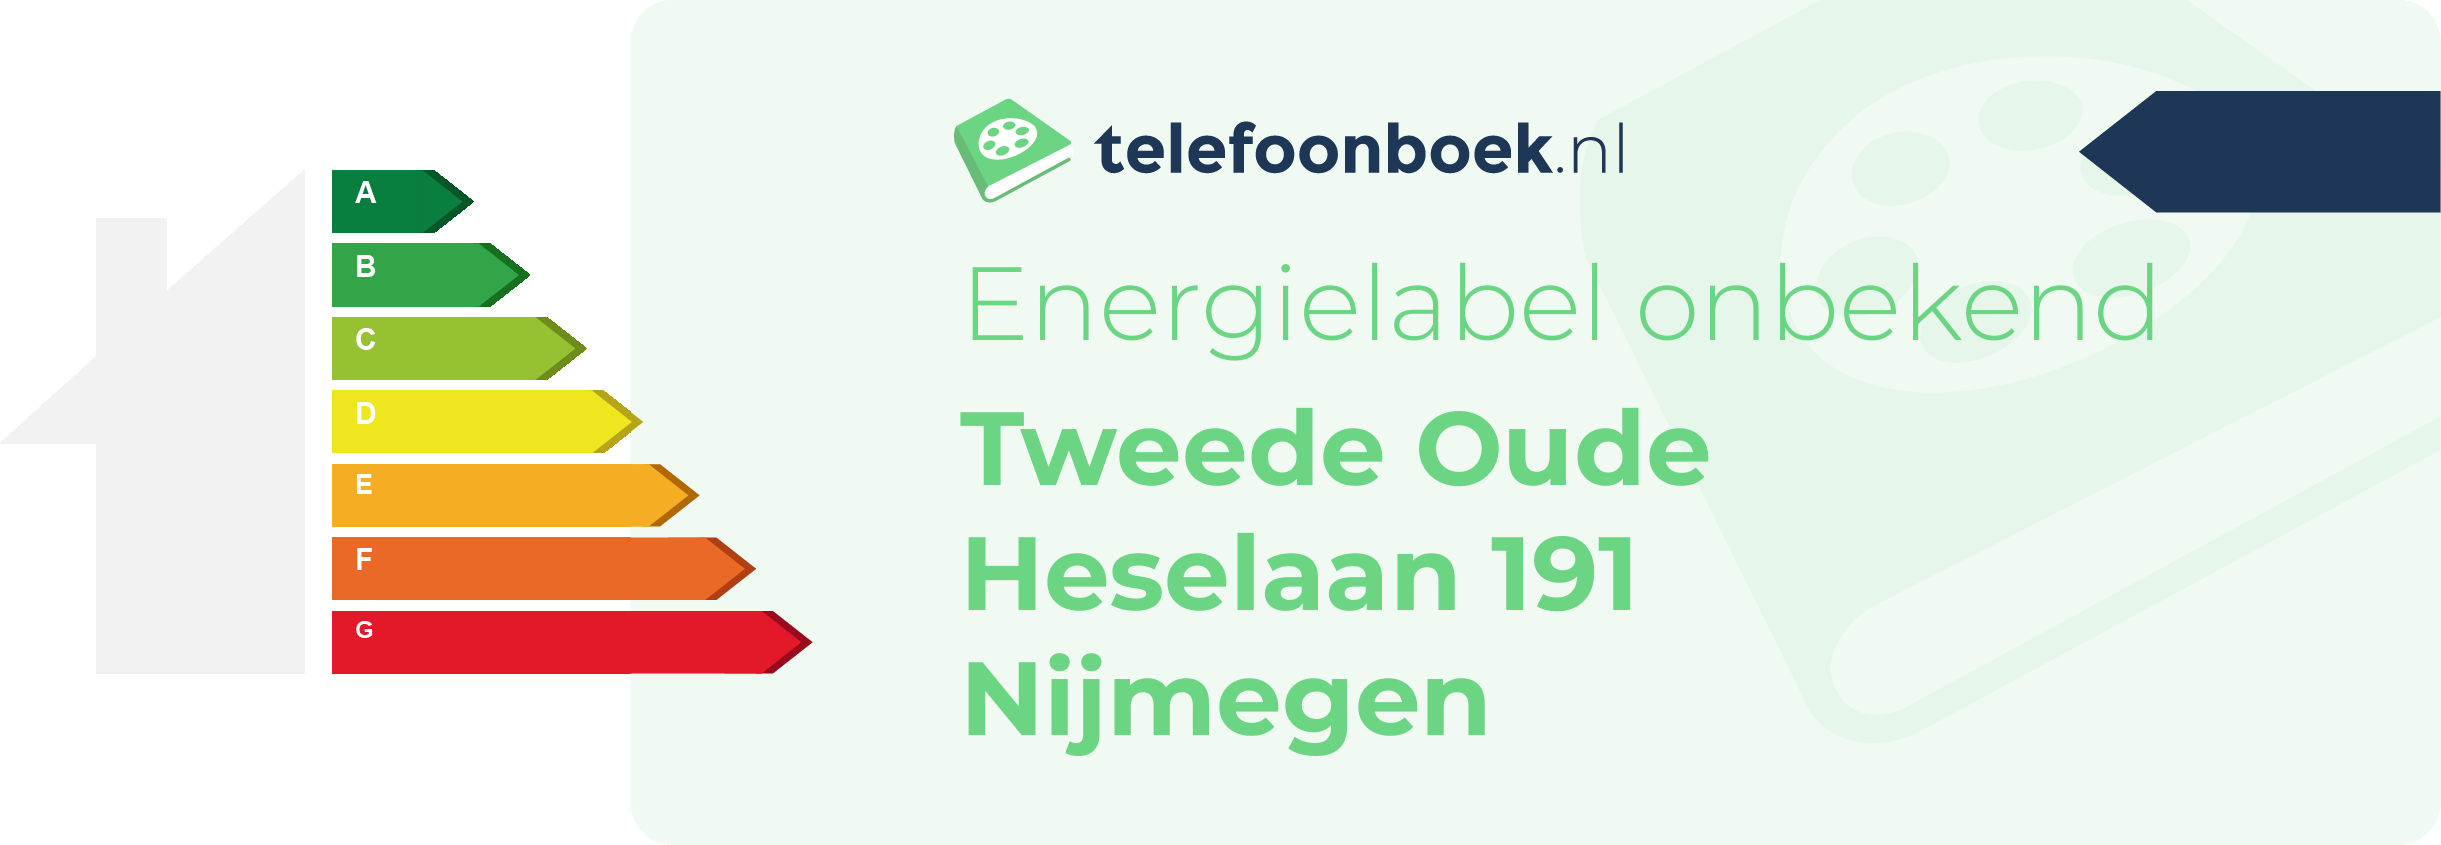 Energielabel Tweede Oude Heselaan 191 Nijmegen